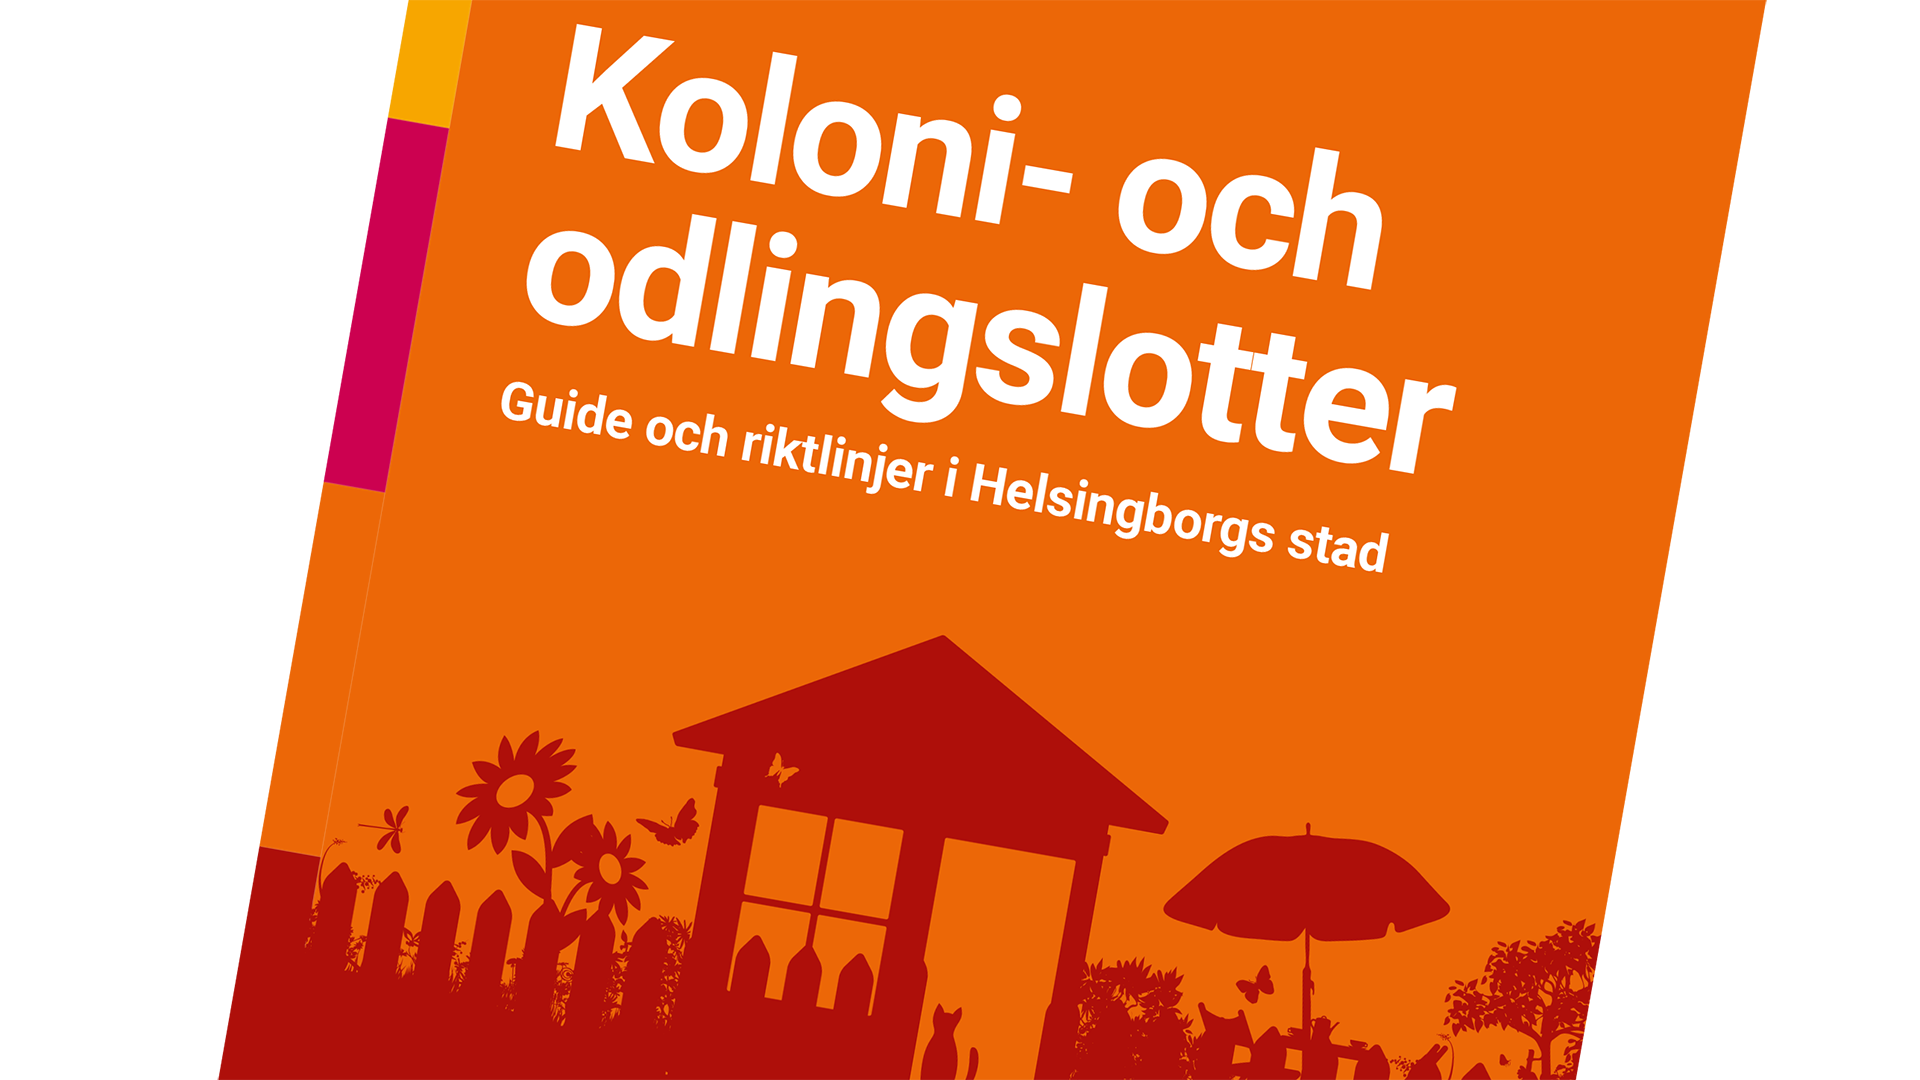 Framsida folder, Koloni- och odlingslotter - Guide och riktlinjer i Helsingborgs stad